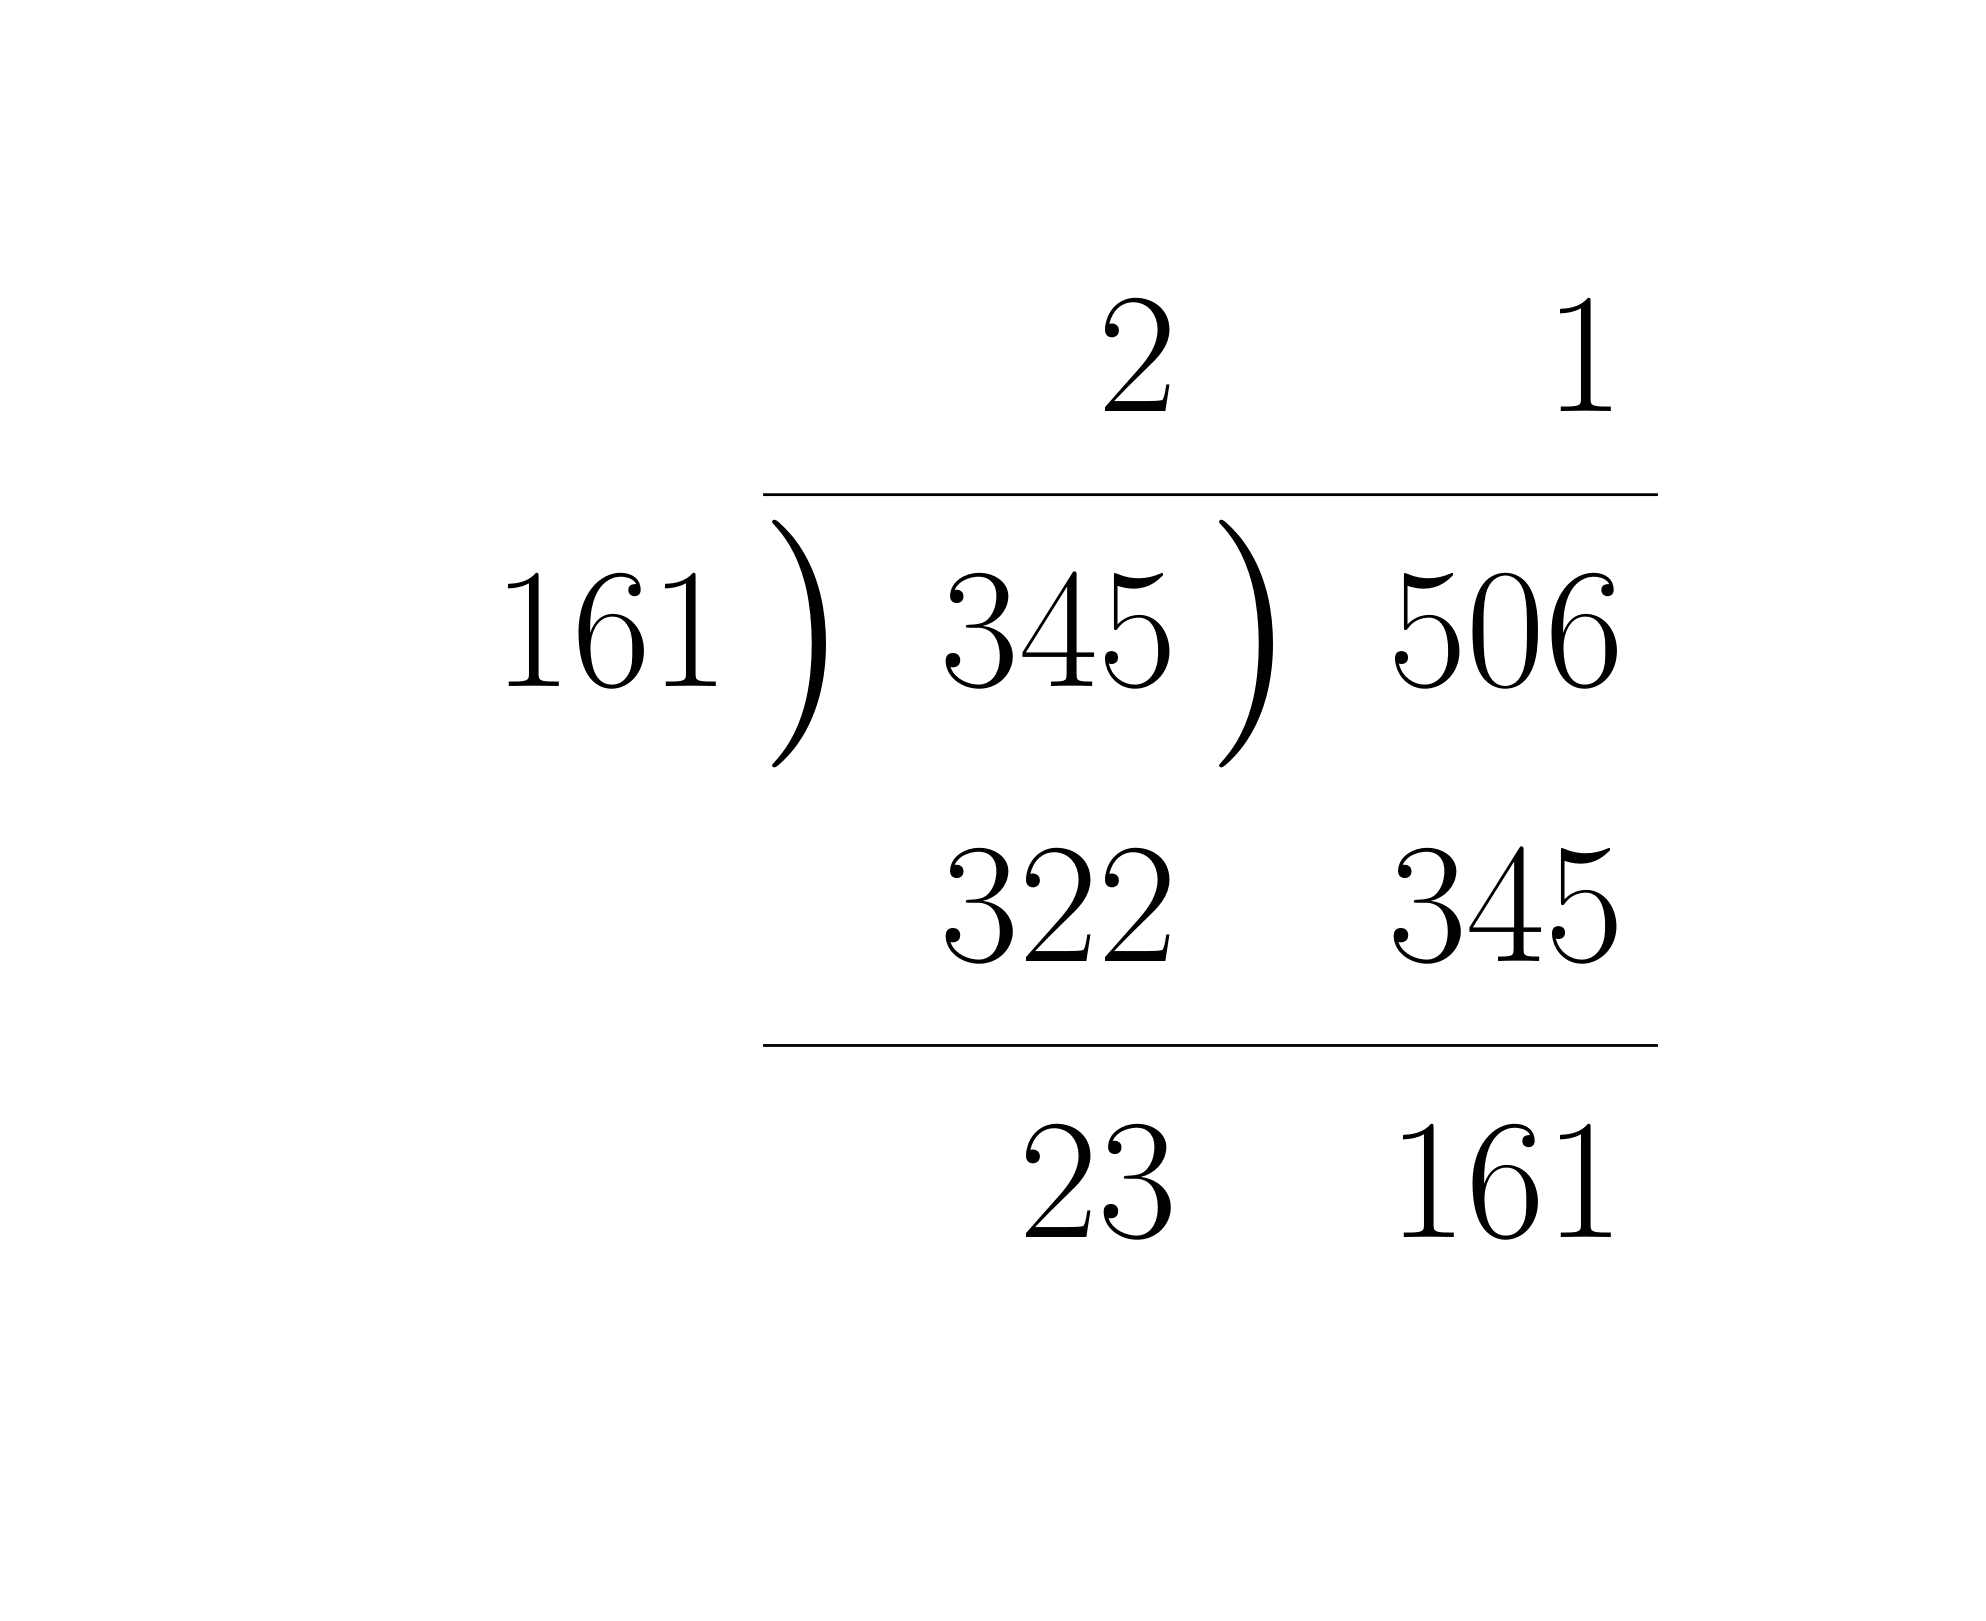 ユークリッドの互除法による最大公約数の求め方の計算法2